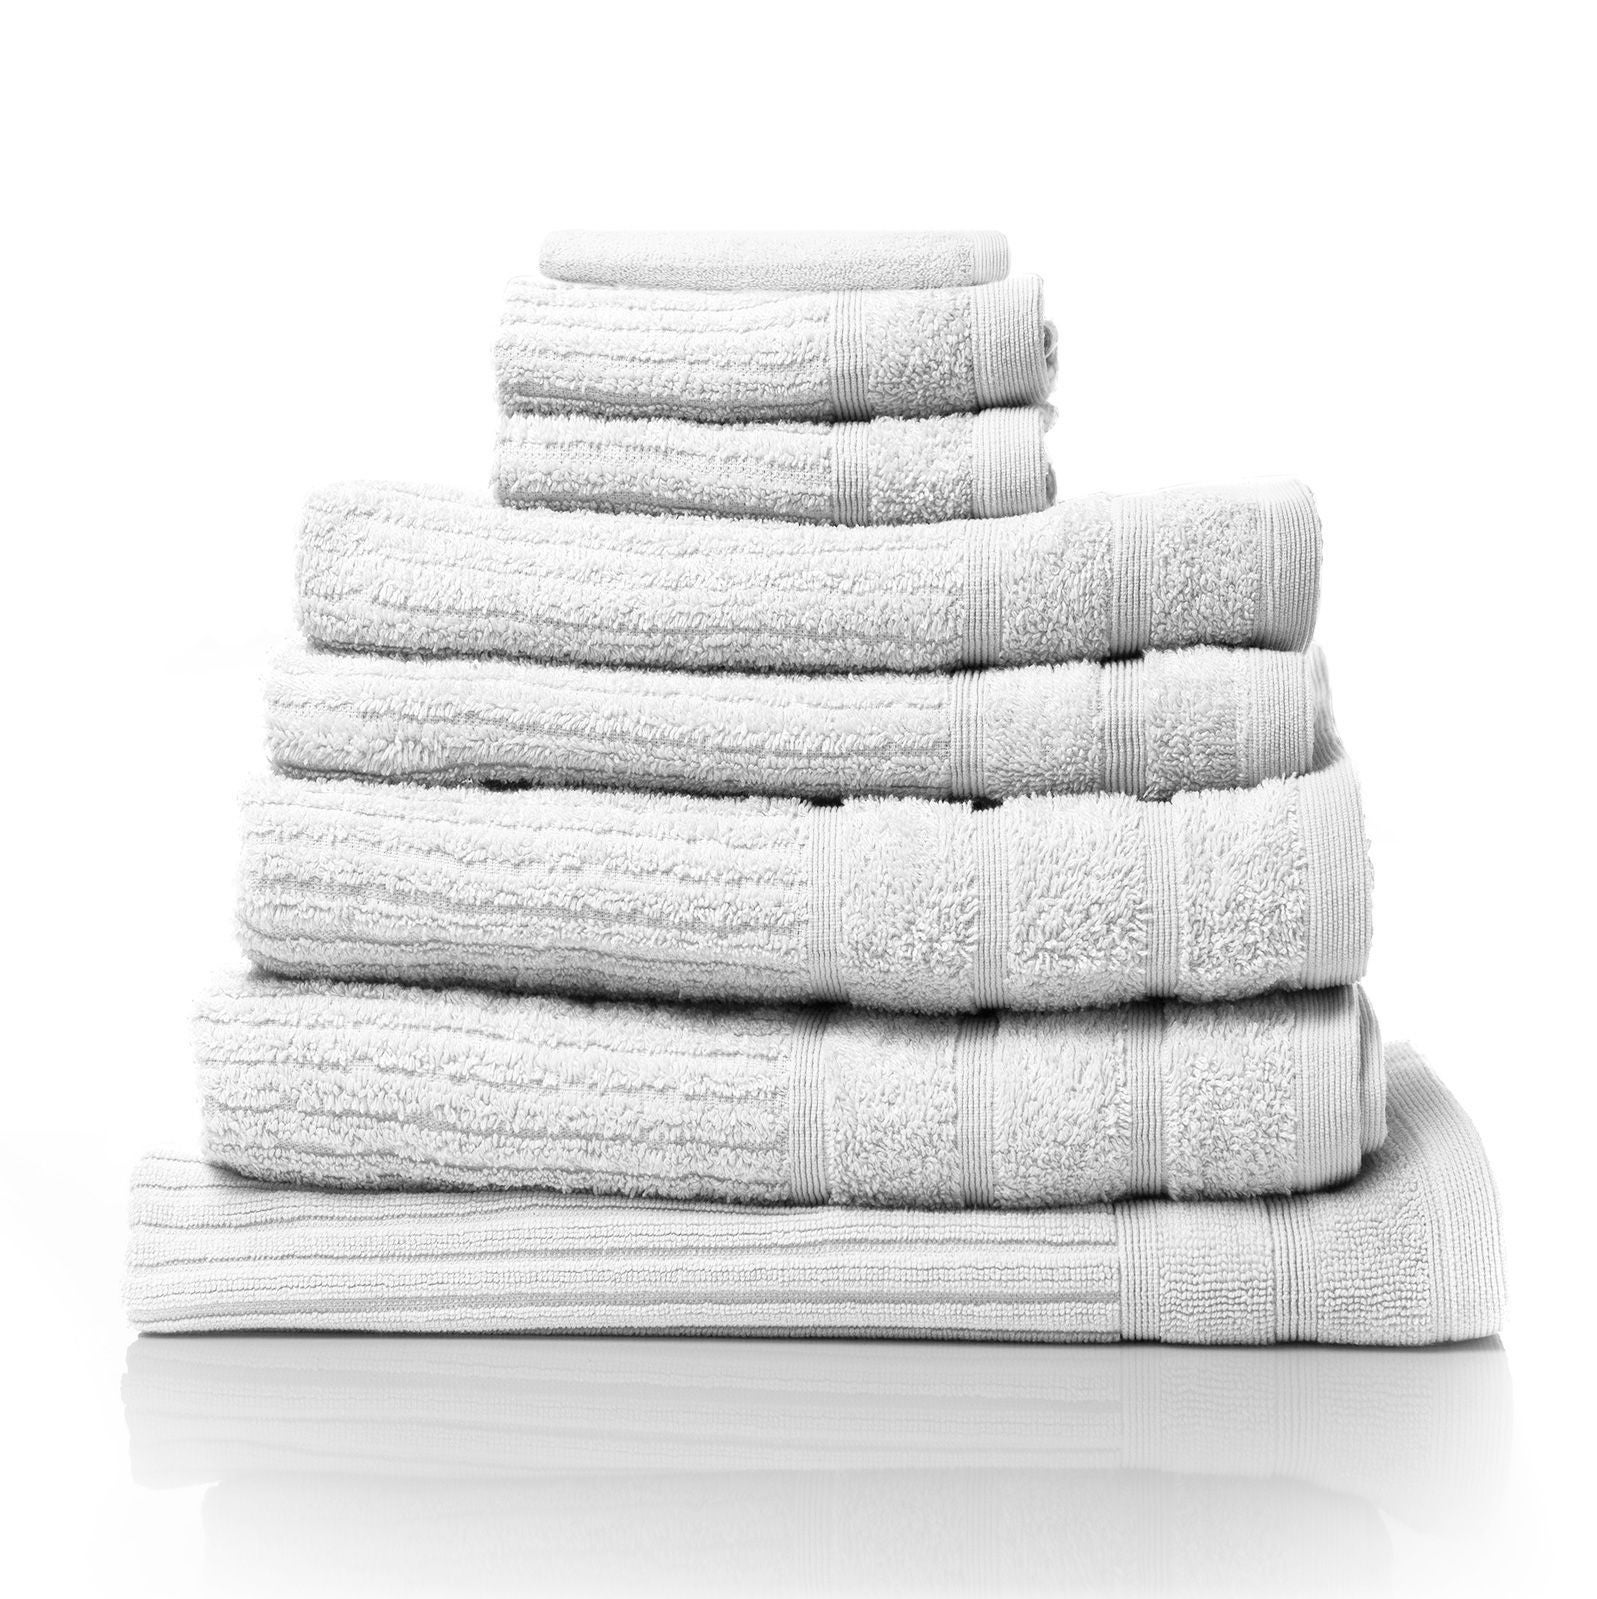 Royal Comfort Eden Cotton 600GSM Luxury Bath Towels Set